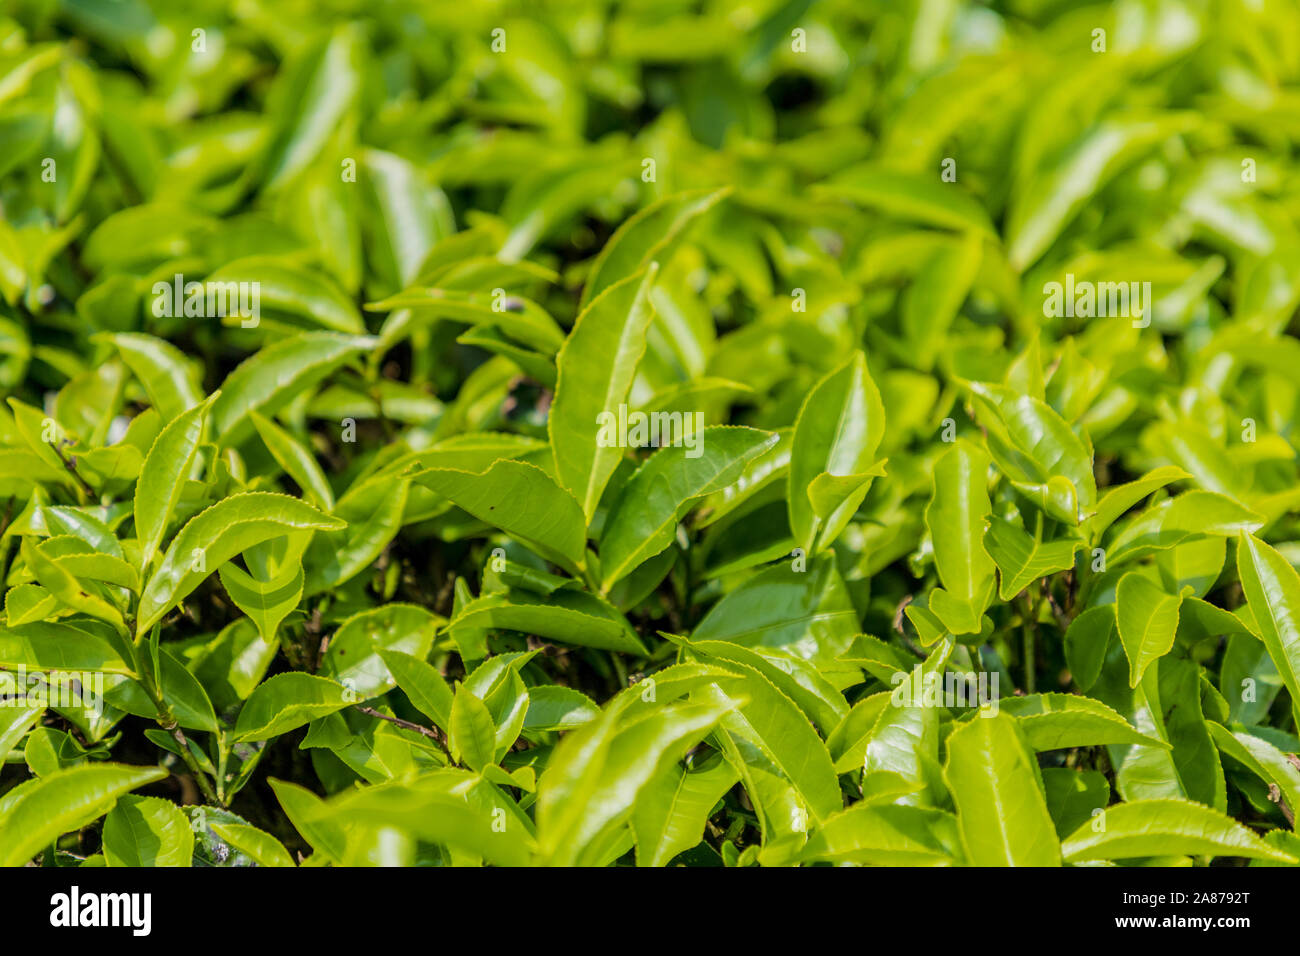 Les plantations de thé dans les Cameron Highlands en Malaisie Banque D'Images